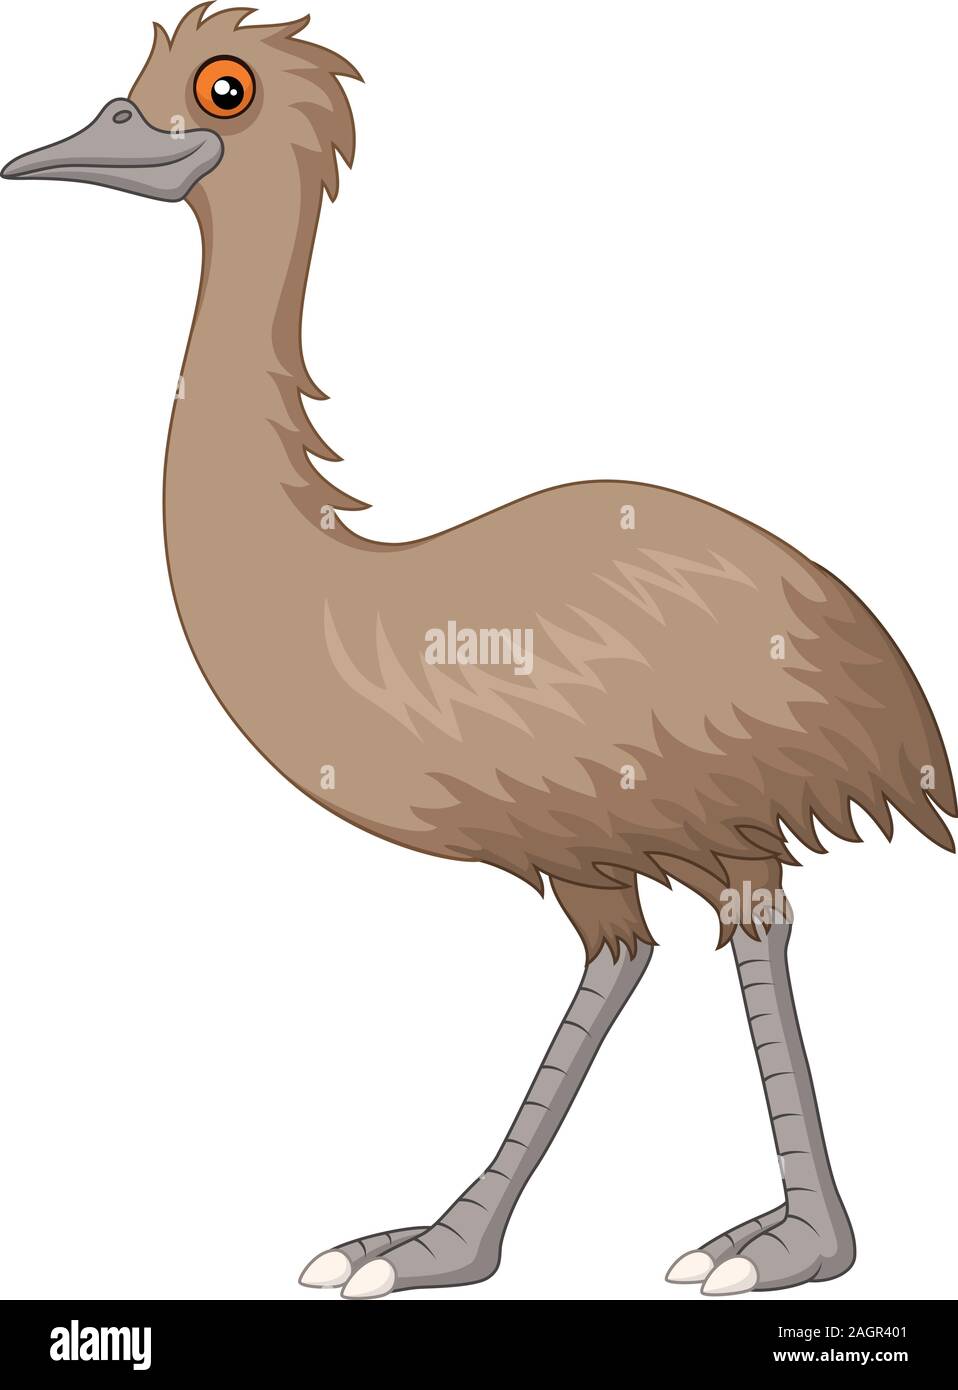 cartoon emu isolated on white background Stock Vector Image & Art - Alamy